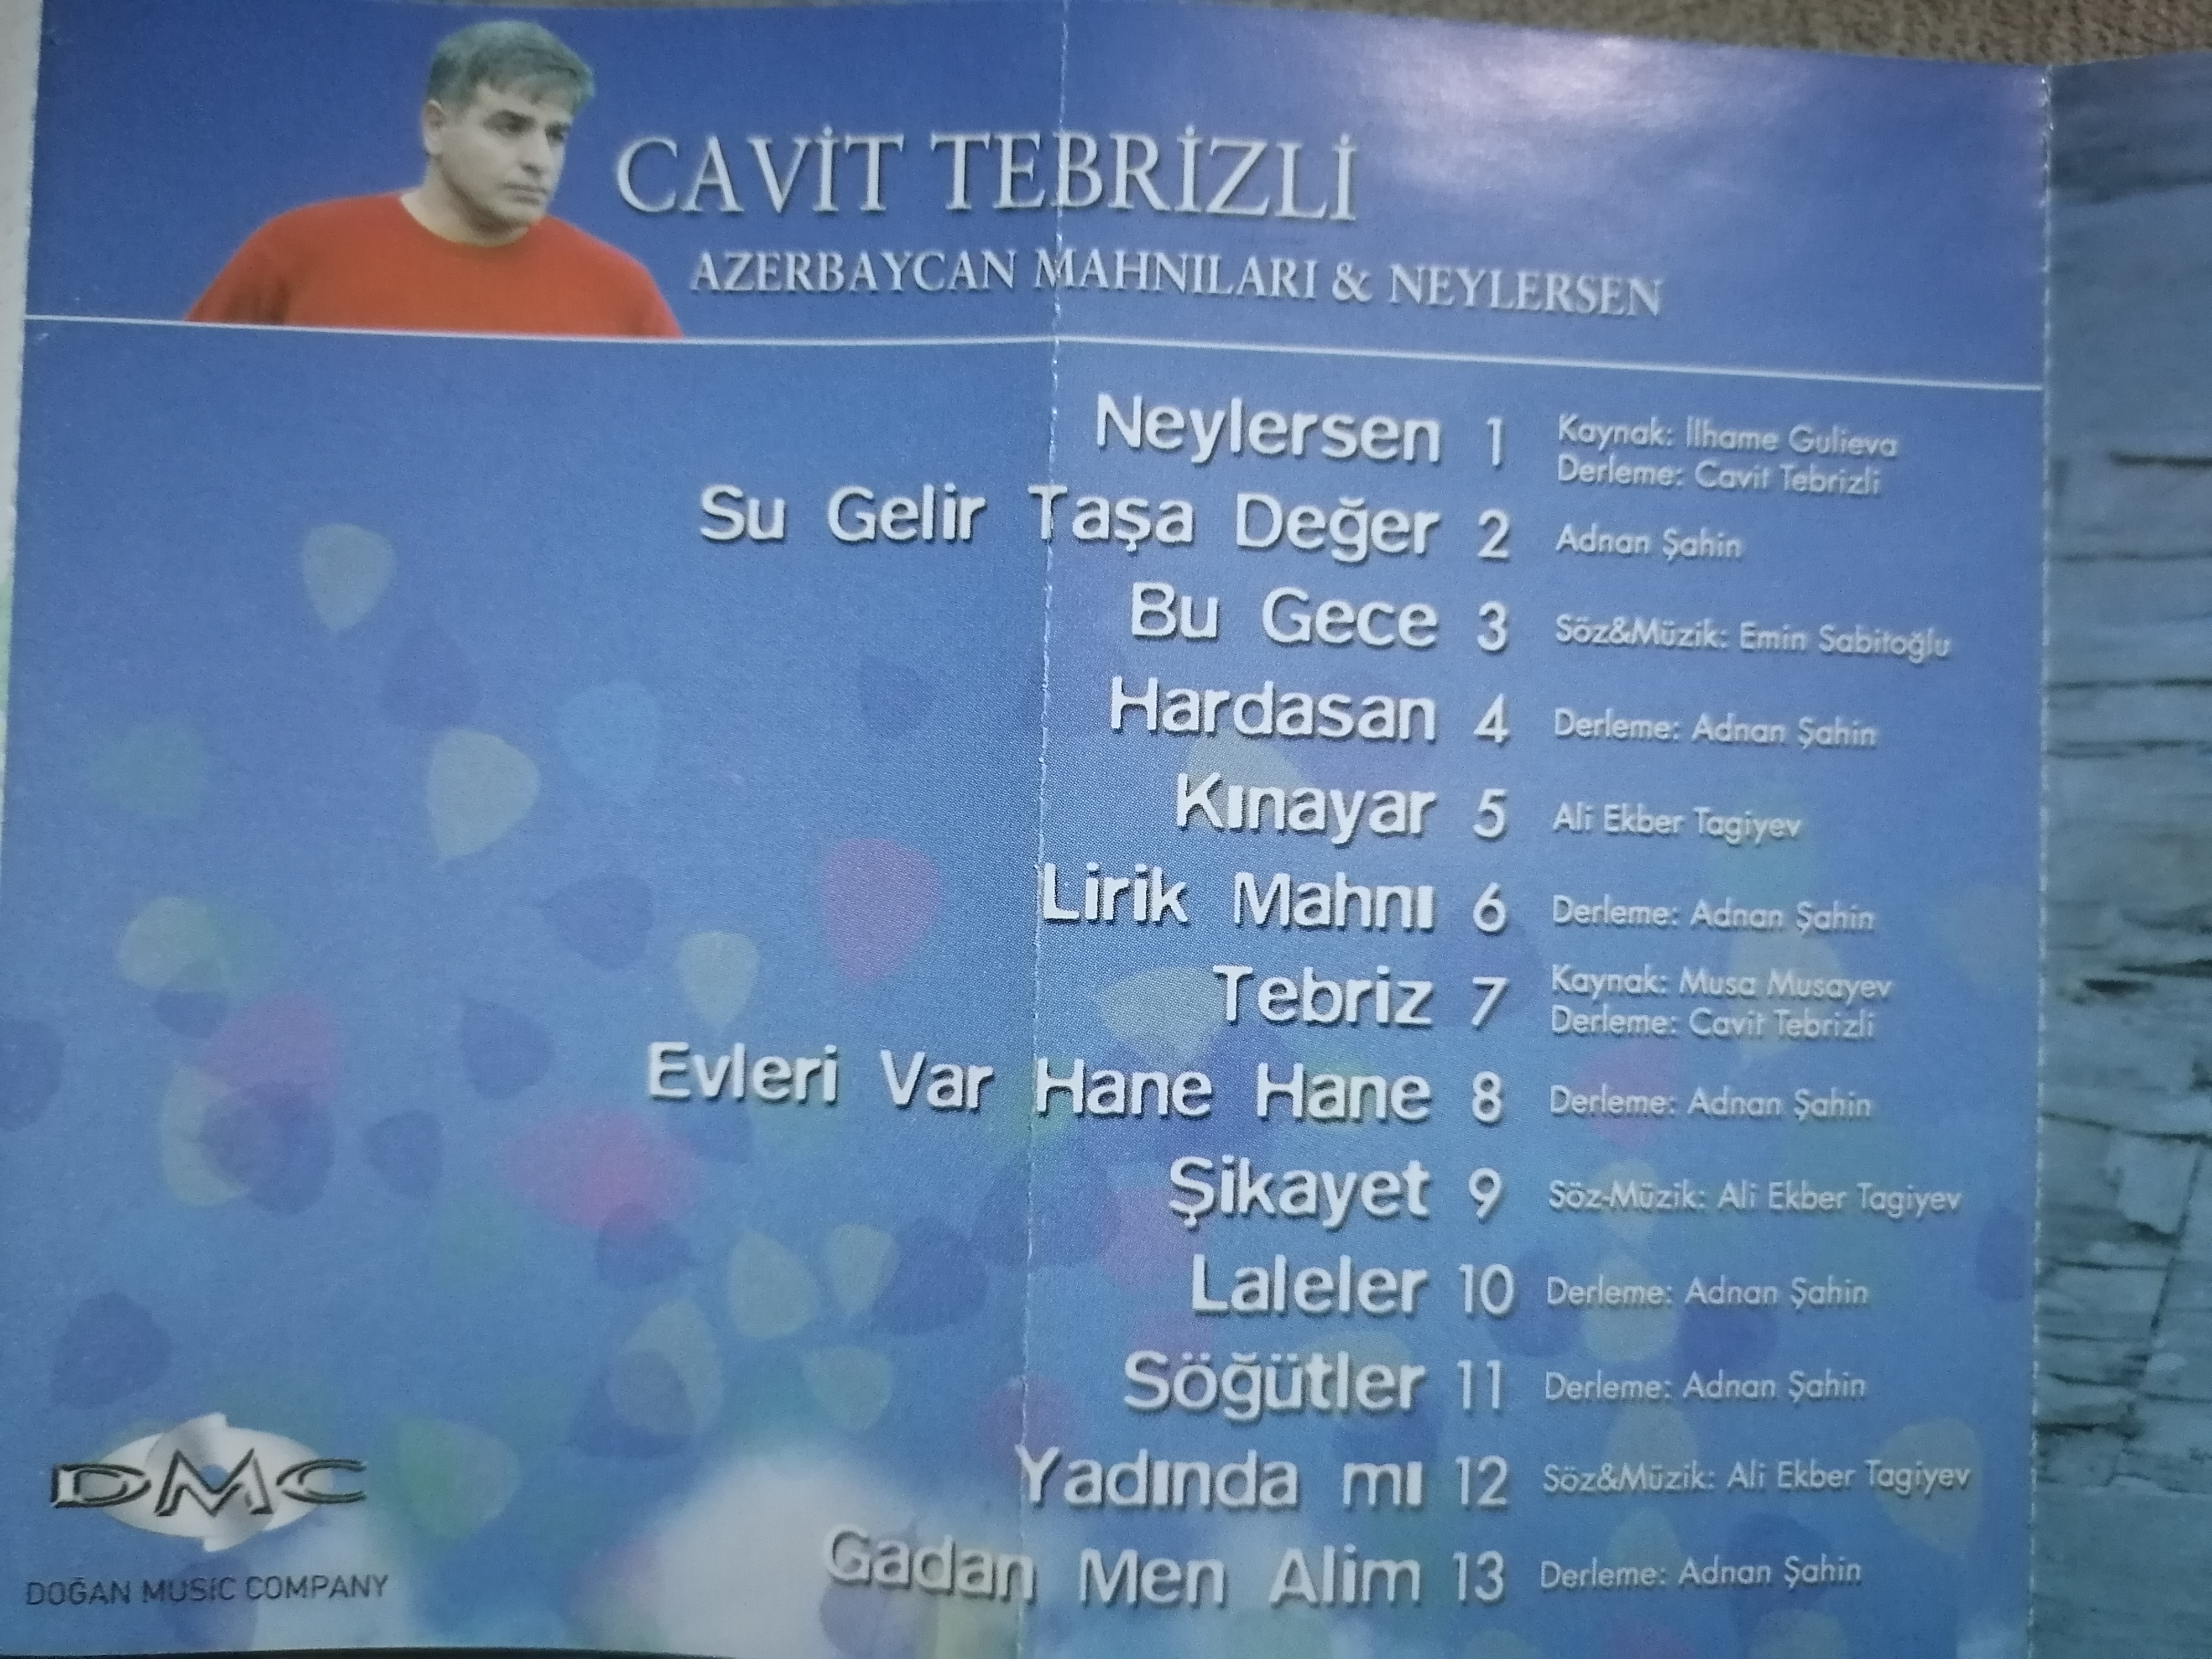 CAVİT TEBRİZLİ - Azerbaycan Mahnıları - 2004 Türkiye Basım Kaset Albüm